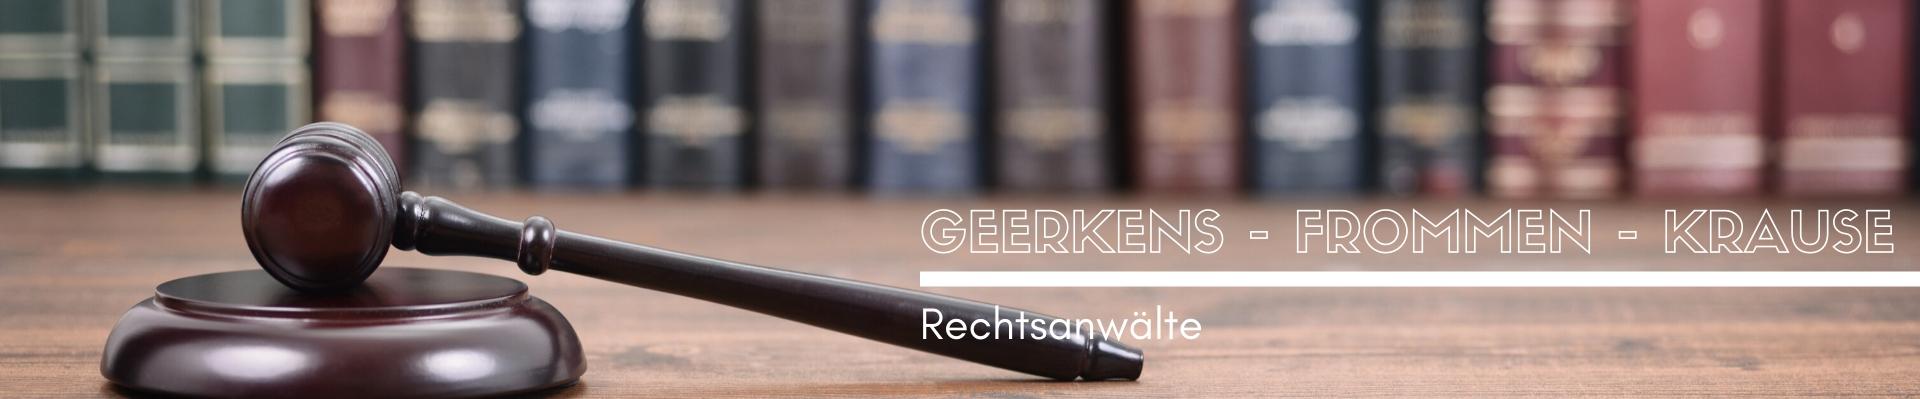 Geerkens - Frommen - Krause ... Rechtsanwälte ... advokat-online.de